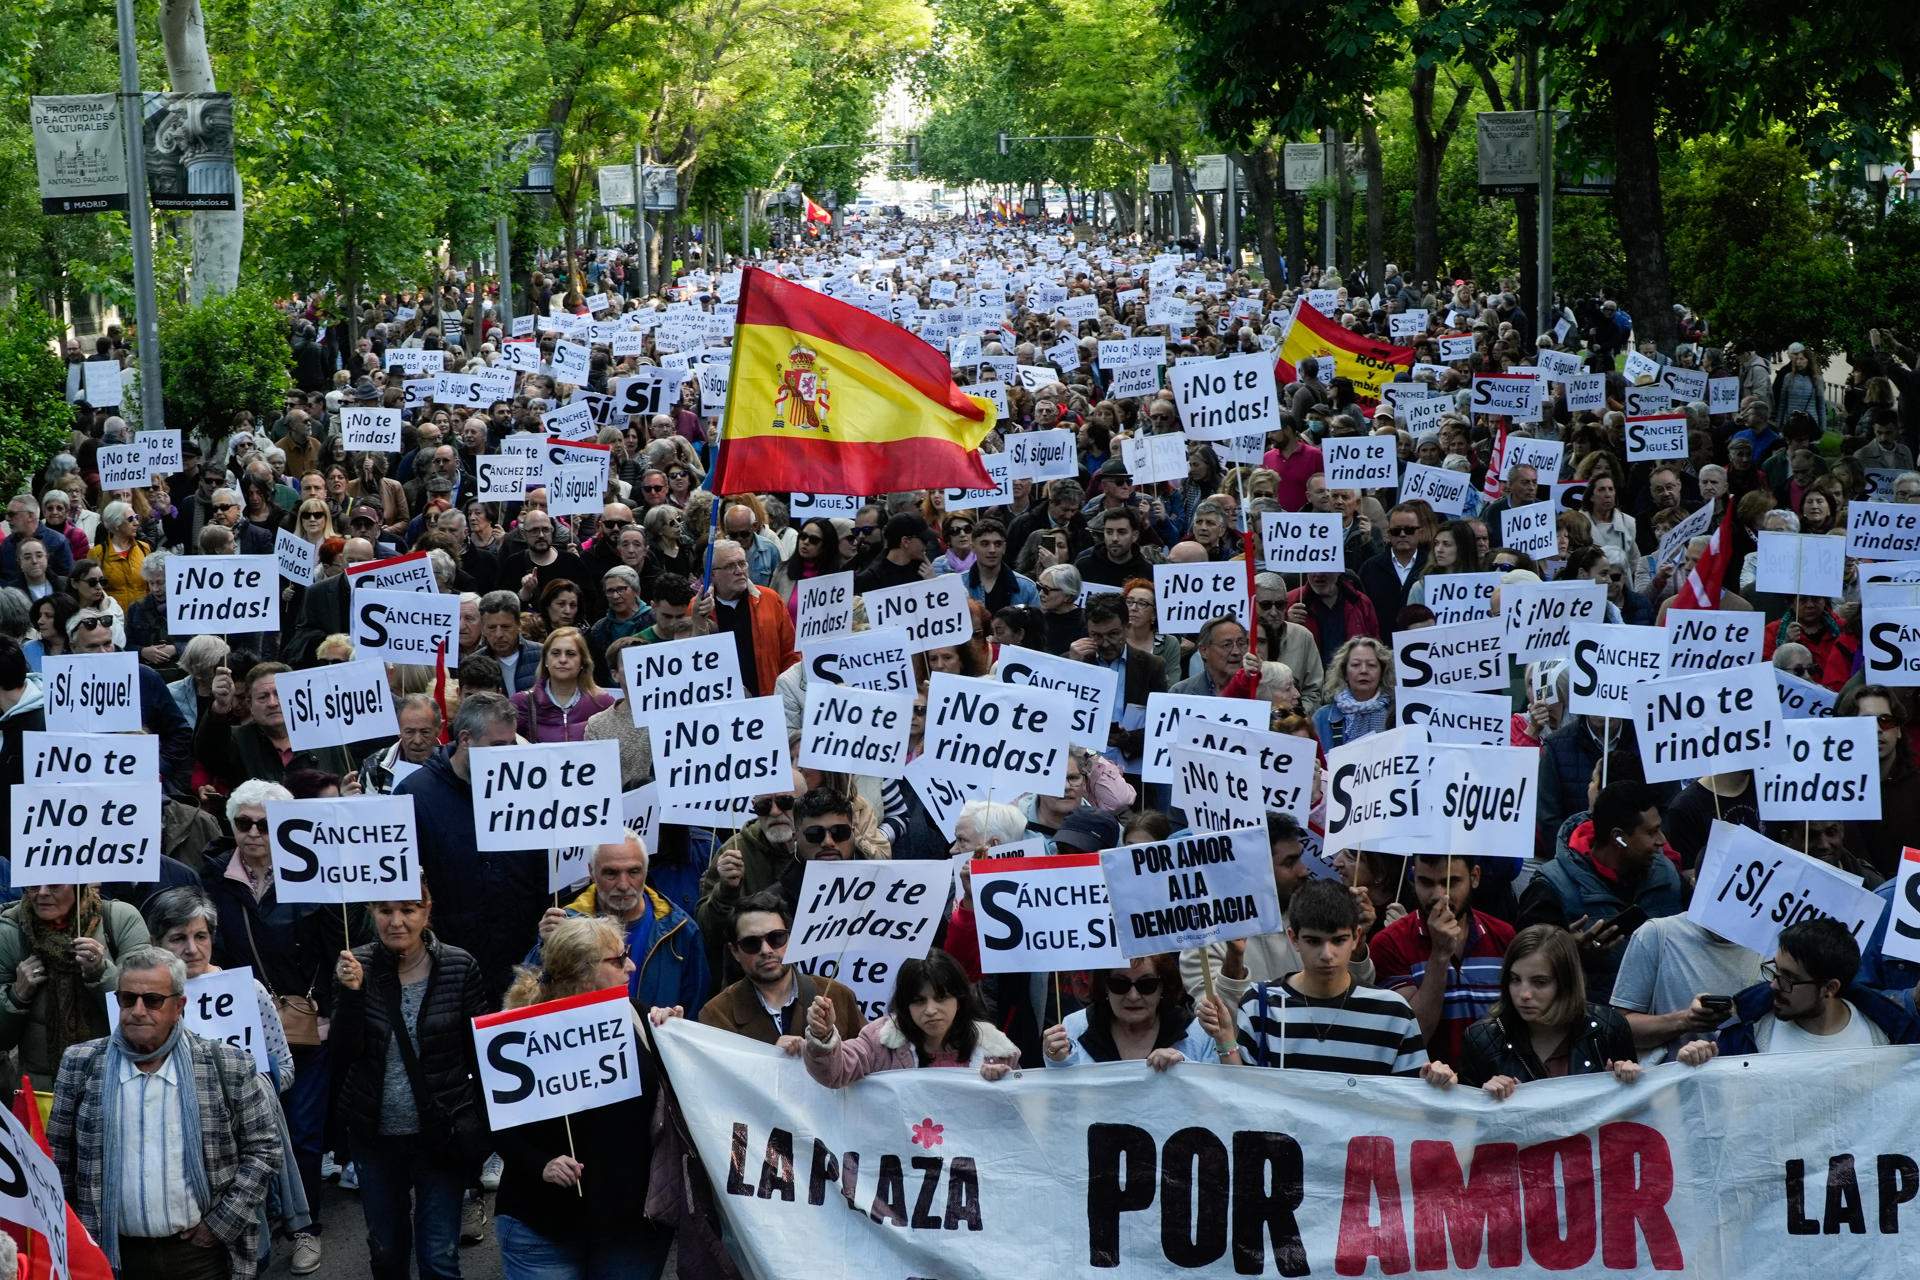 Unas 5.000 personas se manifiestan en defensa de la democracia y de Pedro Sánchez